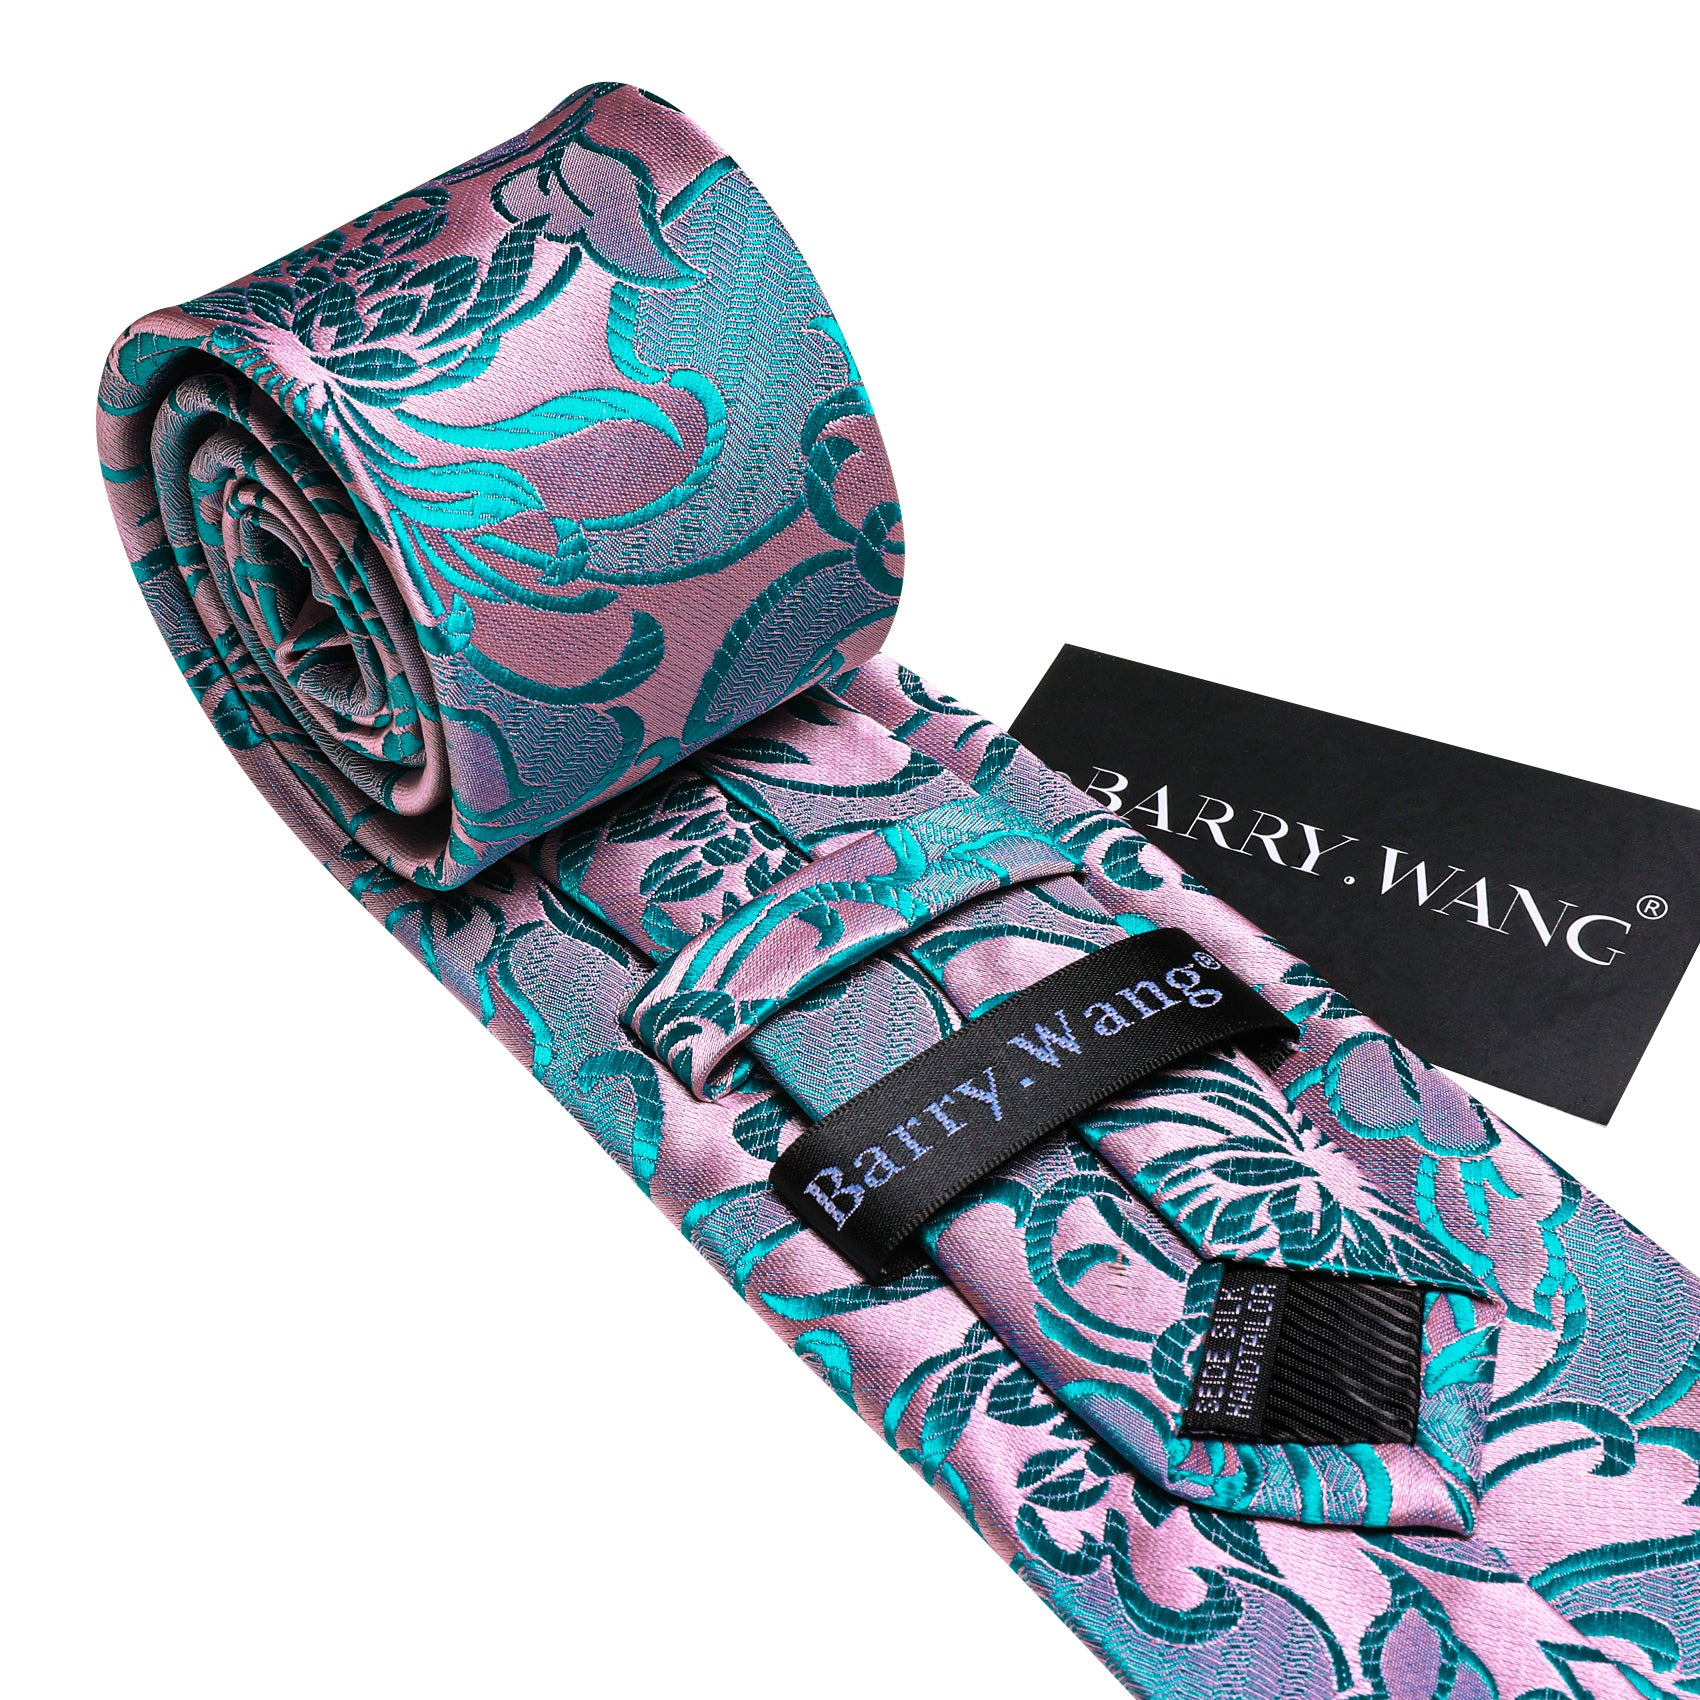 Pink Blue Flower Silk Tie Pocket Square Cufflinks Set